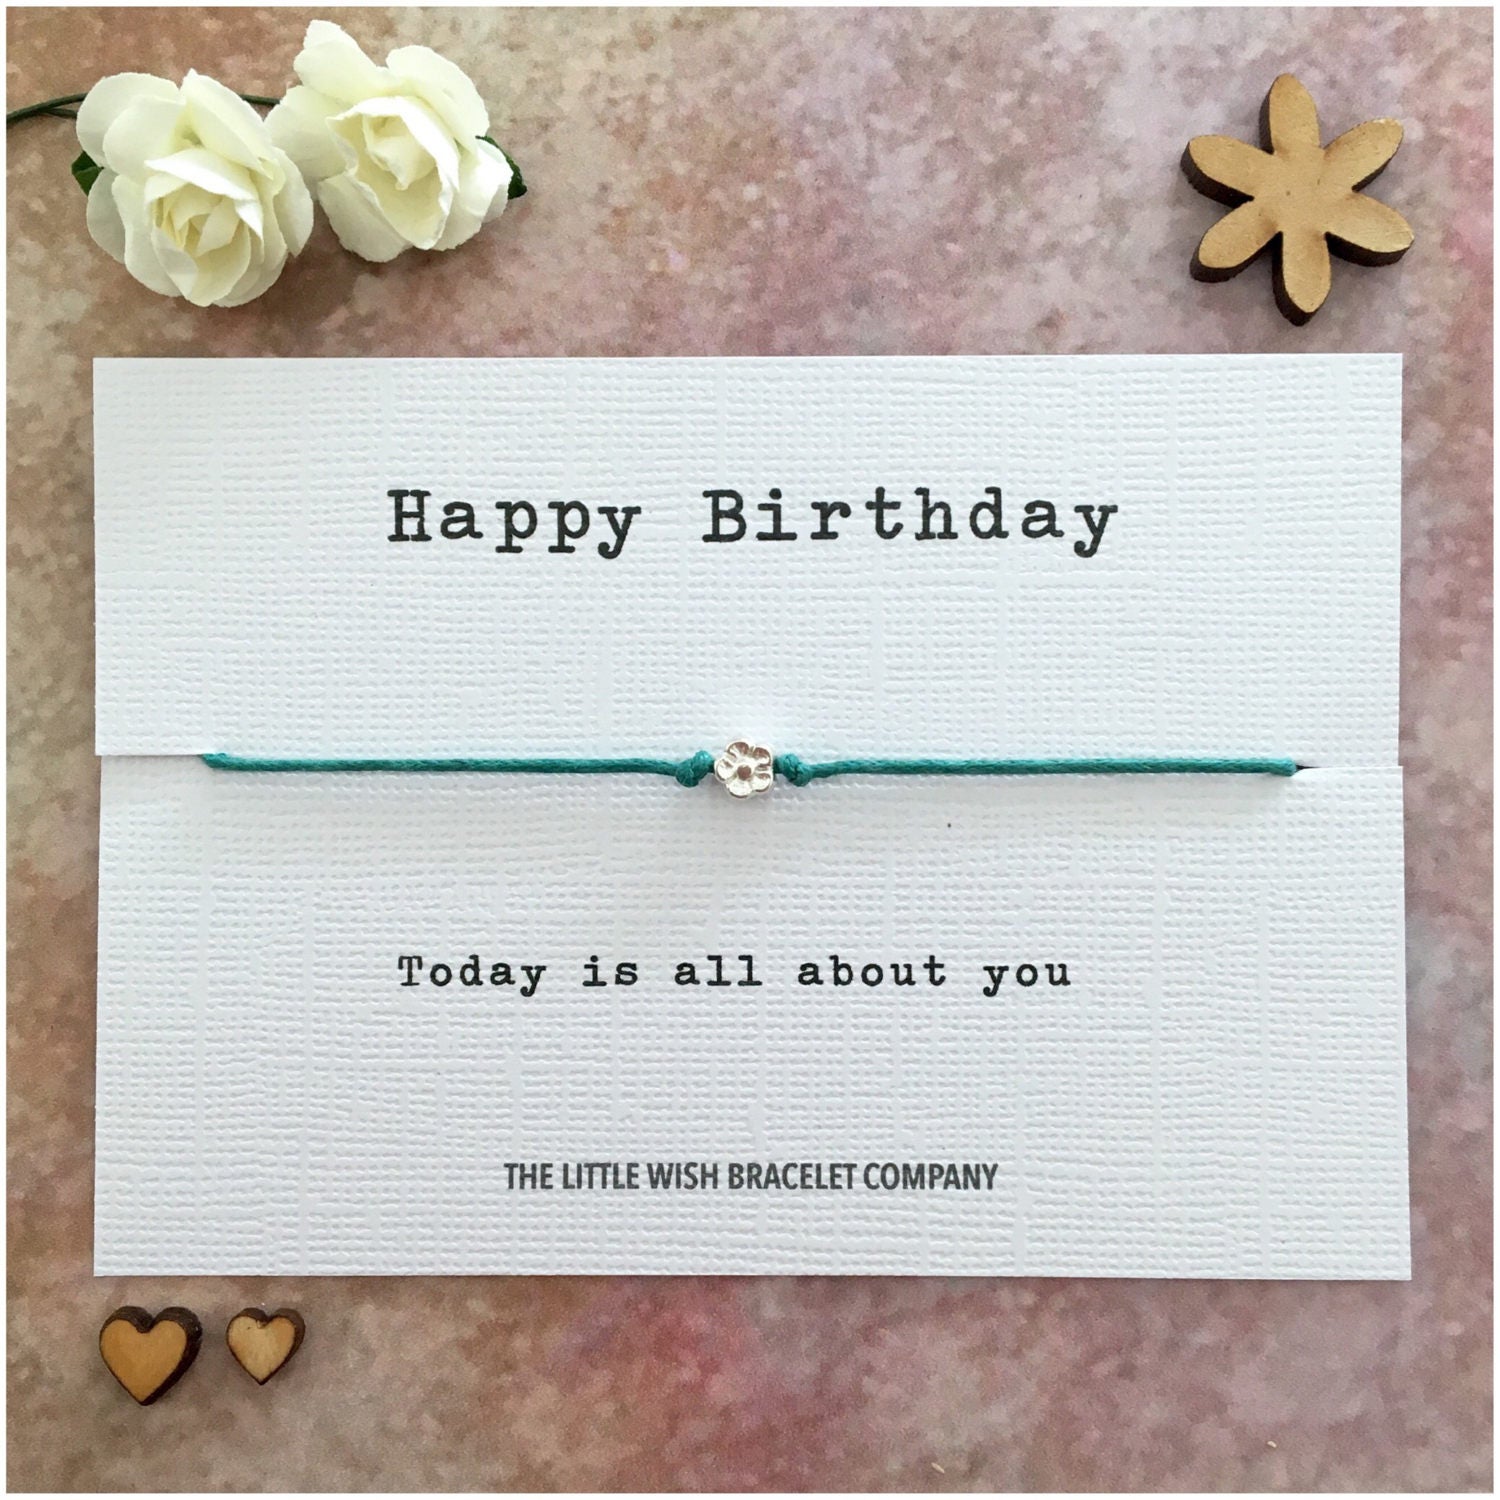 HAPPY BIRTHDAY Wish Bracelet Birthday Wishes Gift Party | Etsy